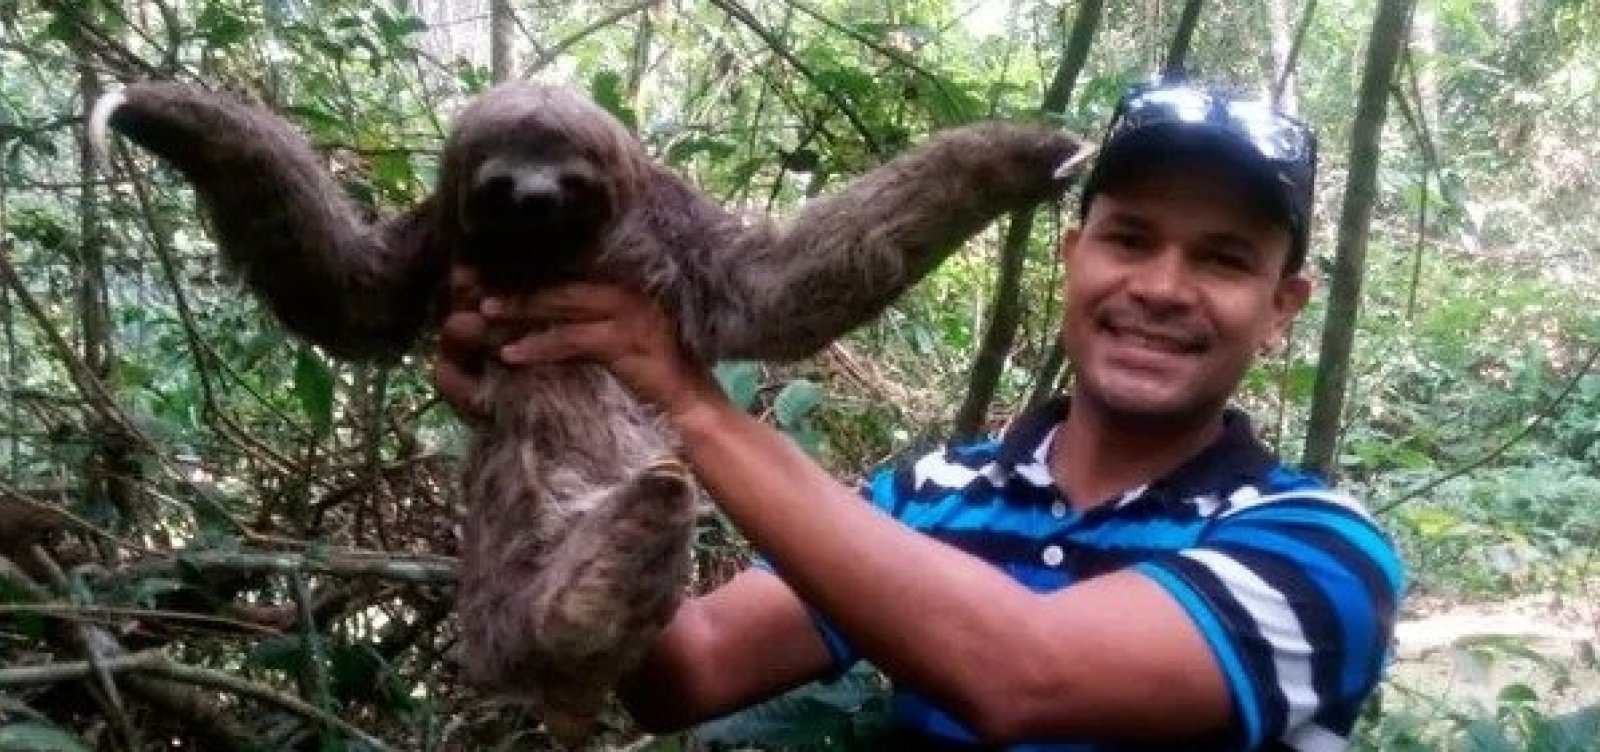 Preguiça encontrada por morador no sul da Bahia é solta no Parque Nacional do Descobrimento